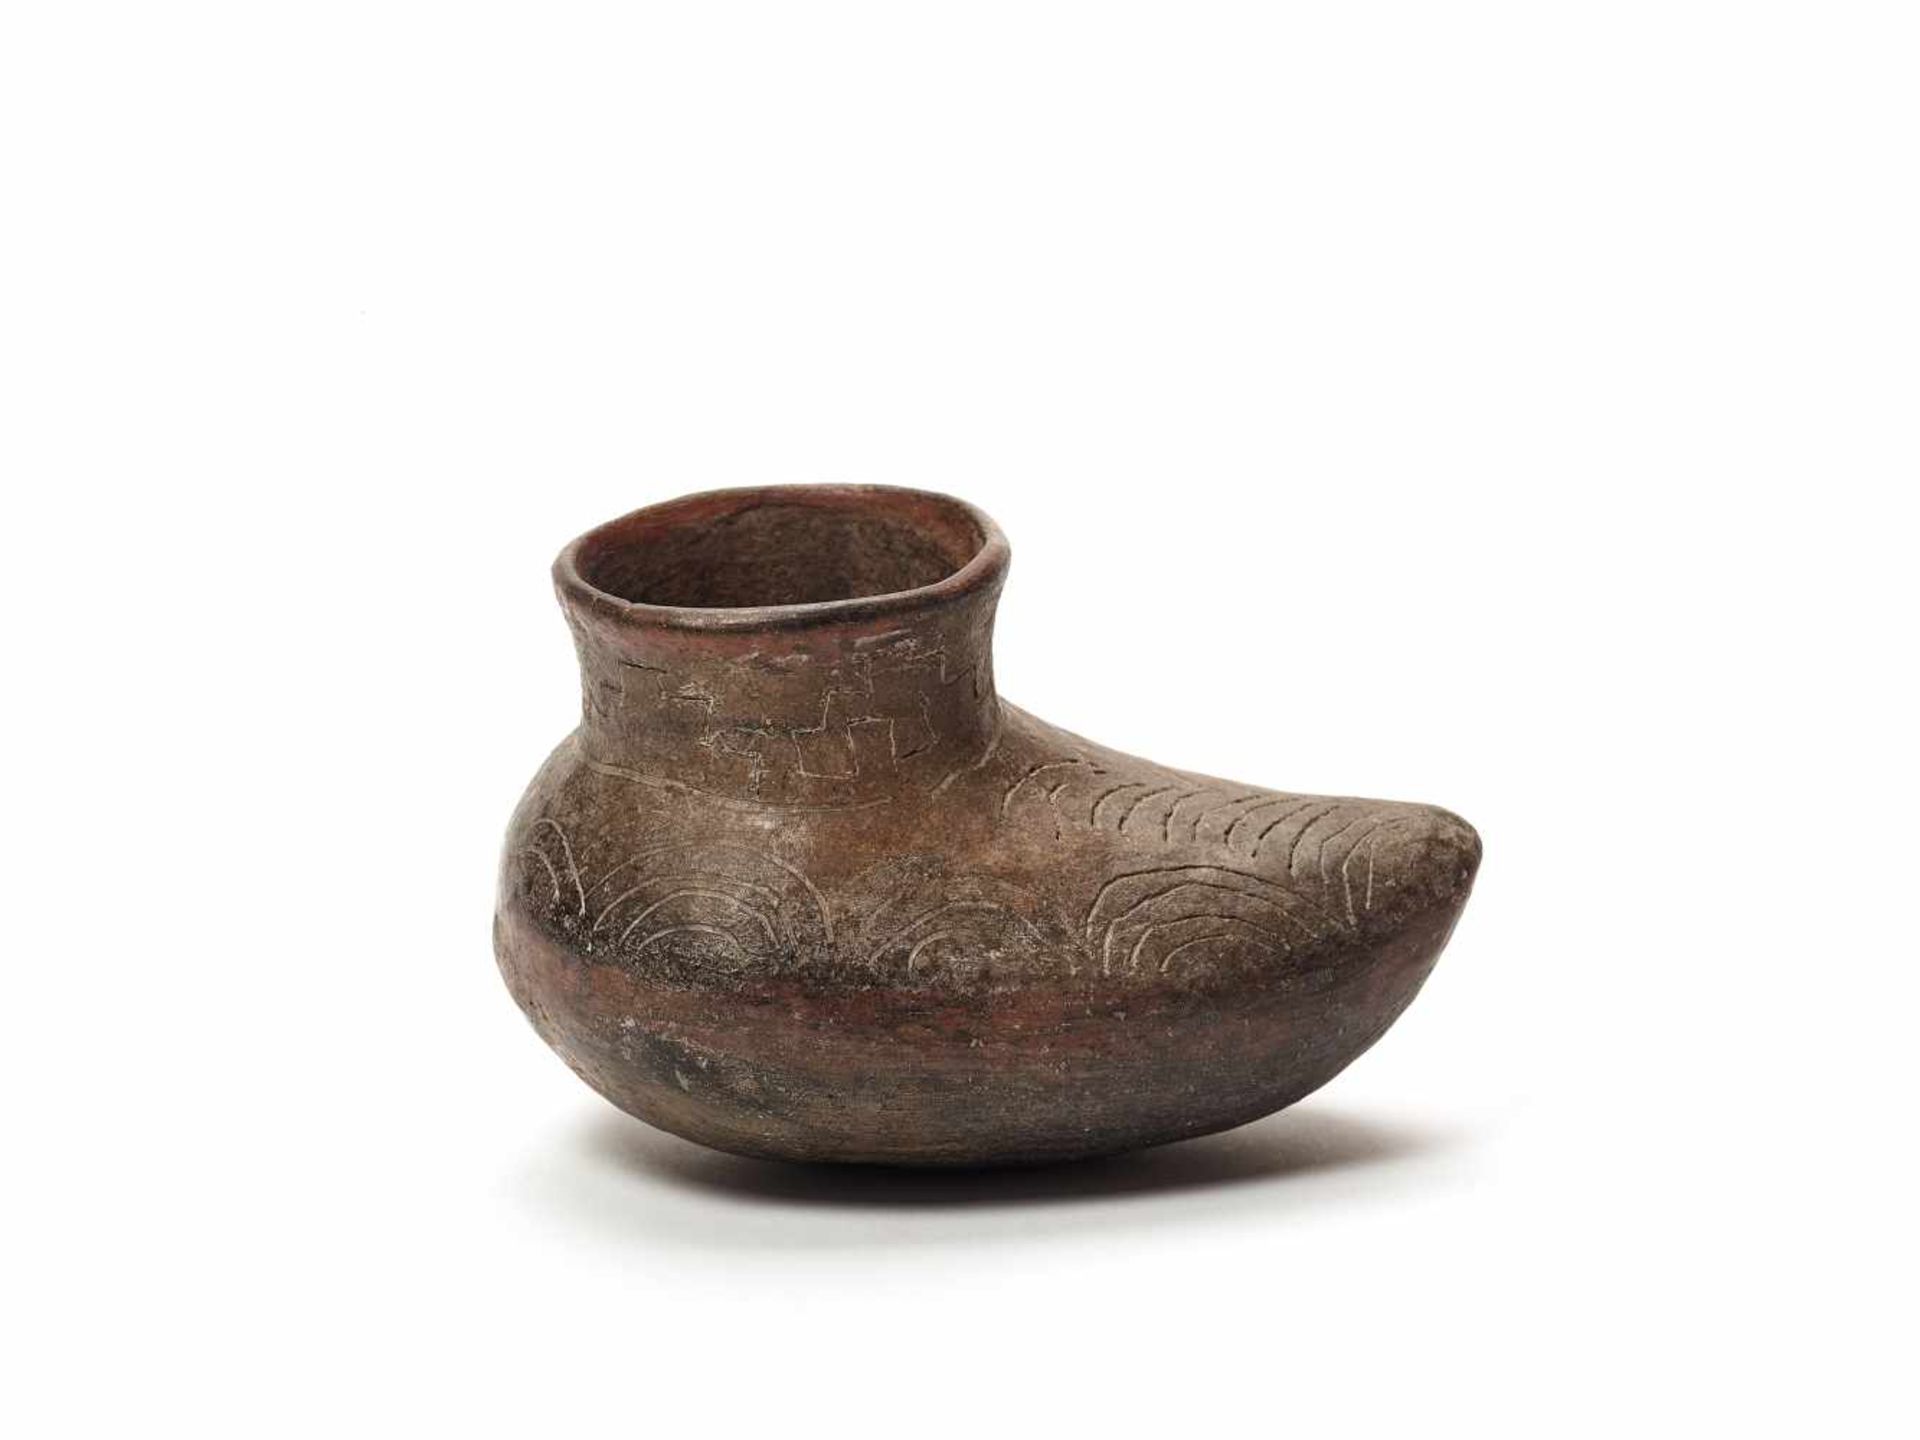 SHOE-SHAPED VESSEL - CHAVIN CULTURE, PERU, C. 500 BCBlack fired clayChavin culture, Peru, c. 500